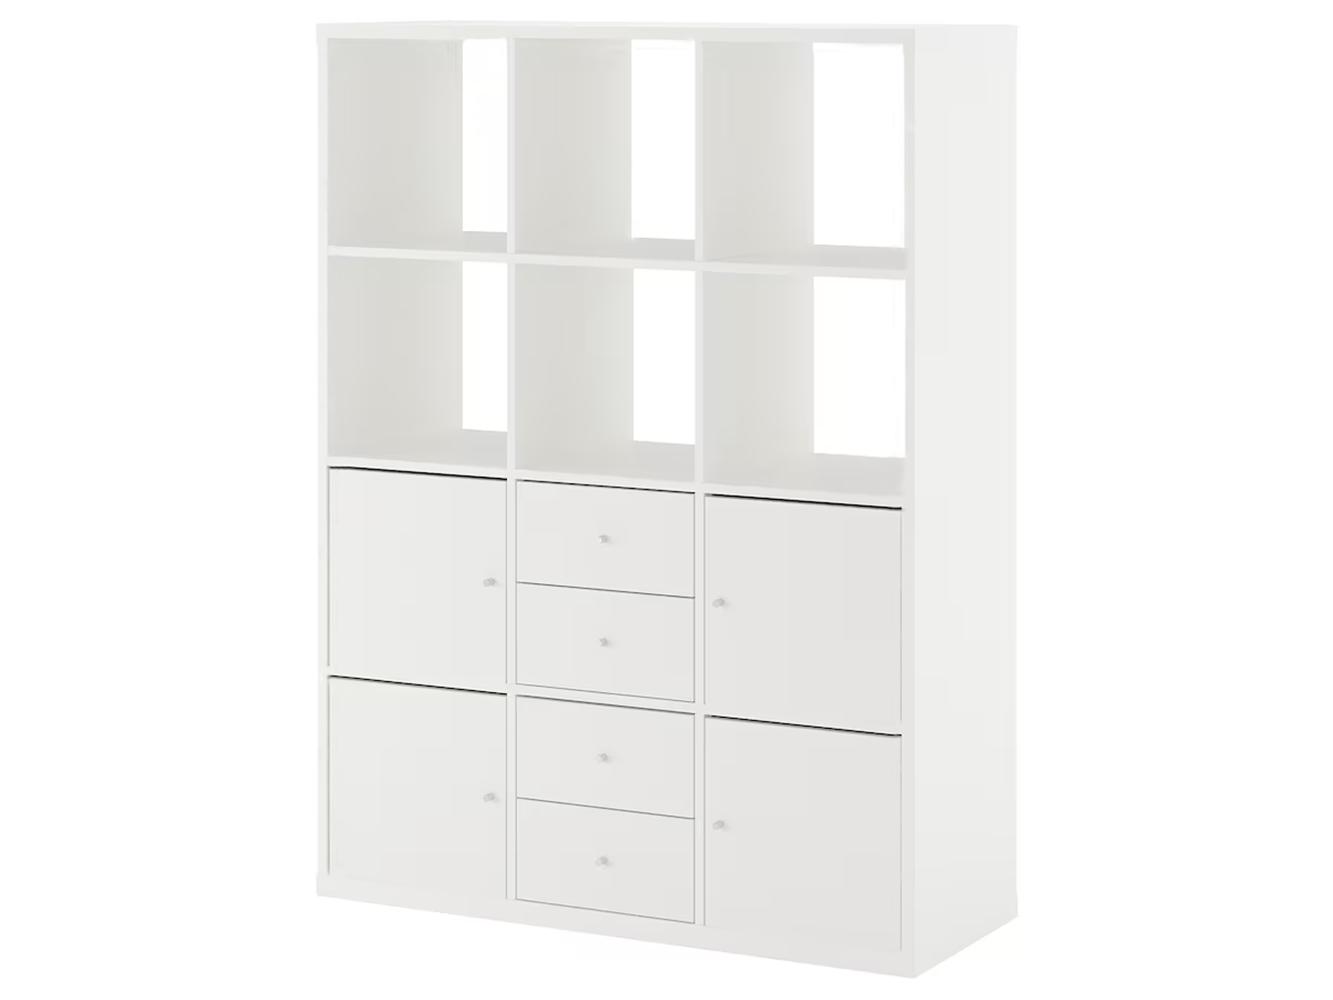 Стеллаж Каллакс 221 white ИКЕА (IKEA) изображение товара